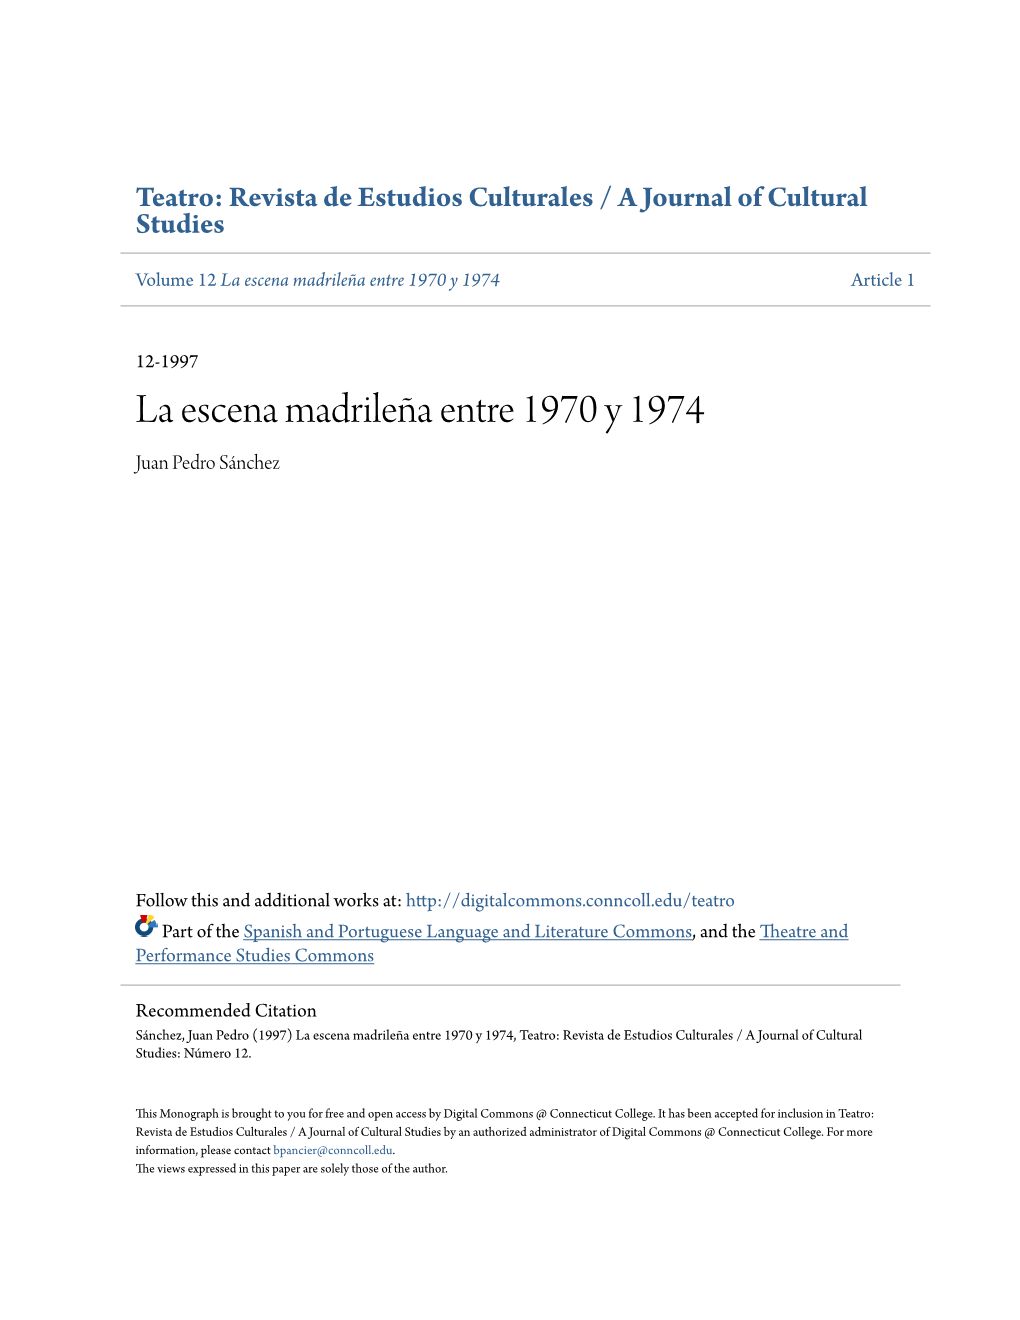 La Escena Madrileña Entre 1970 Y 1974 Article 1